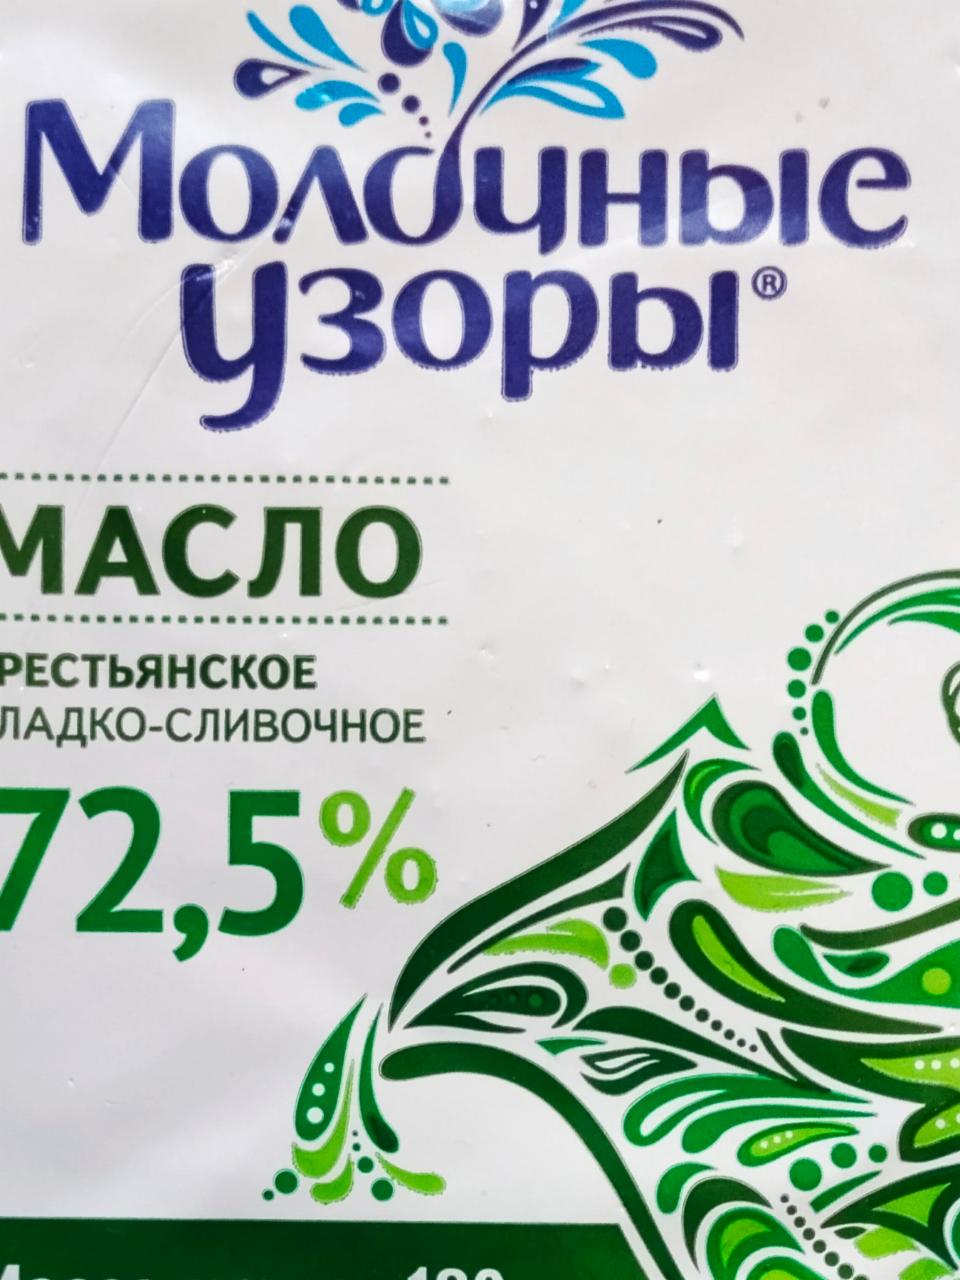 Фото - масло 72,5% крестьянское сладко-сливочное высшего сорта Молочные узоры